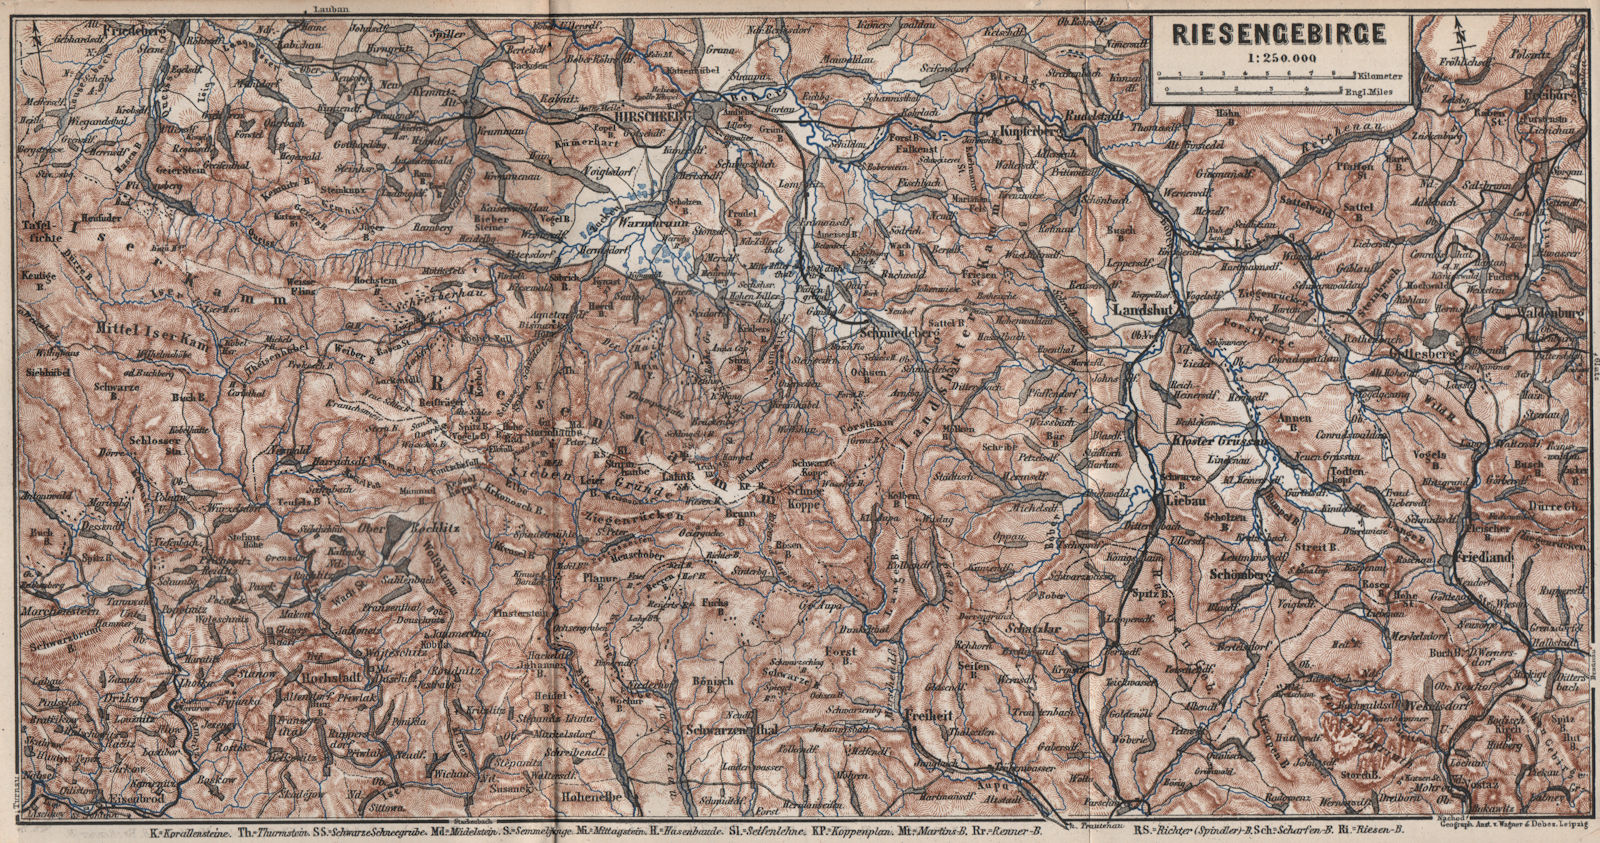 KARKONOSZE/IZERY/SUDETY MOUNTAINS Jelenia Gora Lubawka Swiebodzice 1886 map